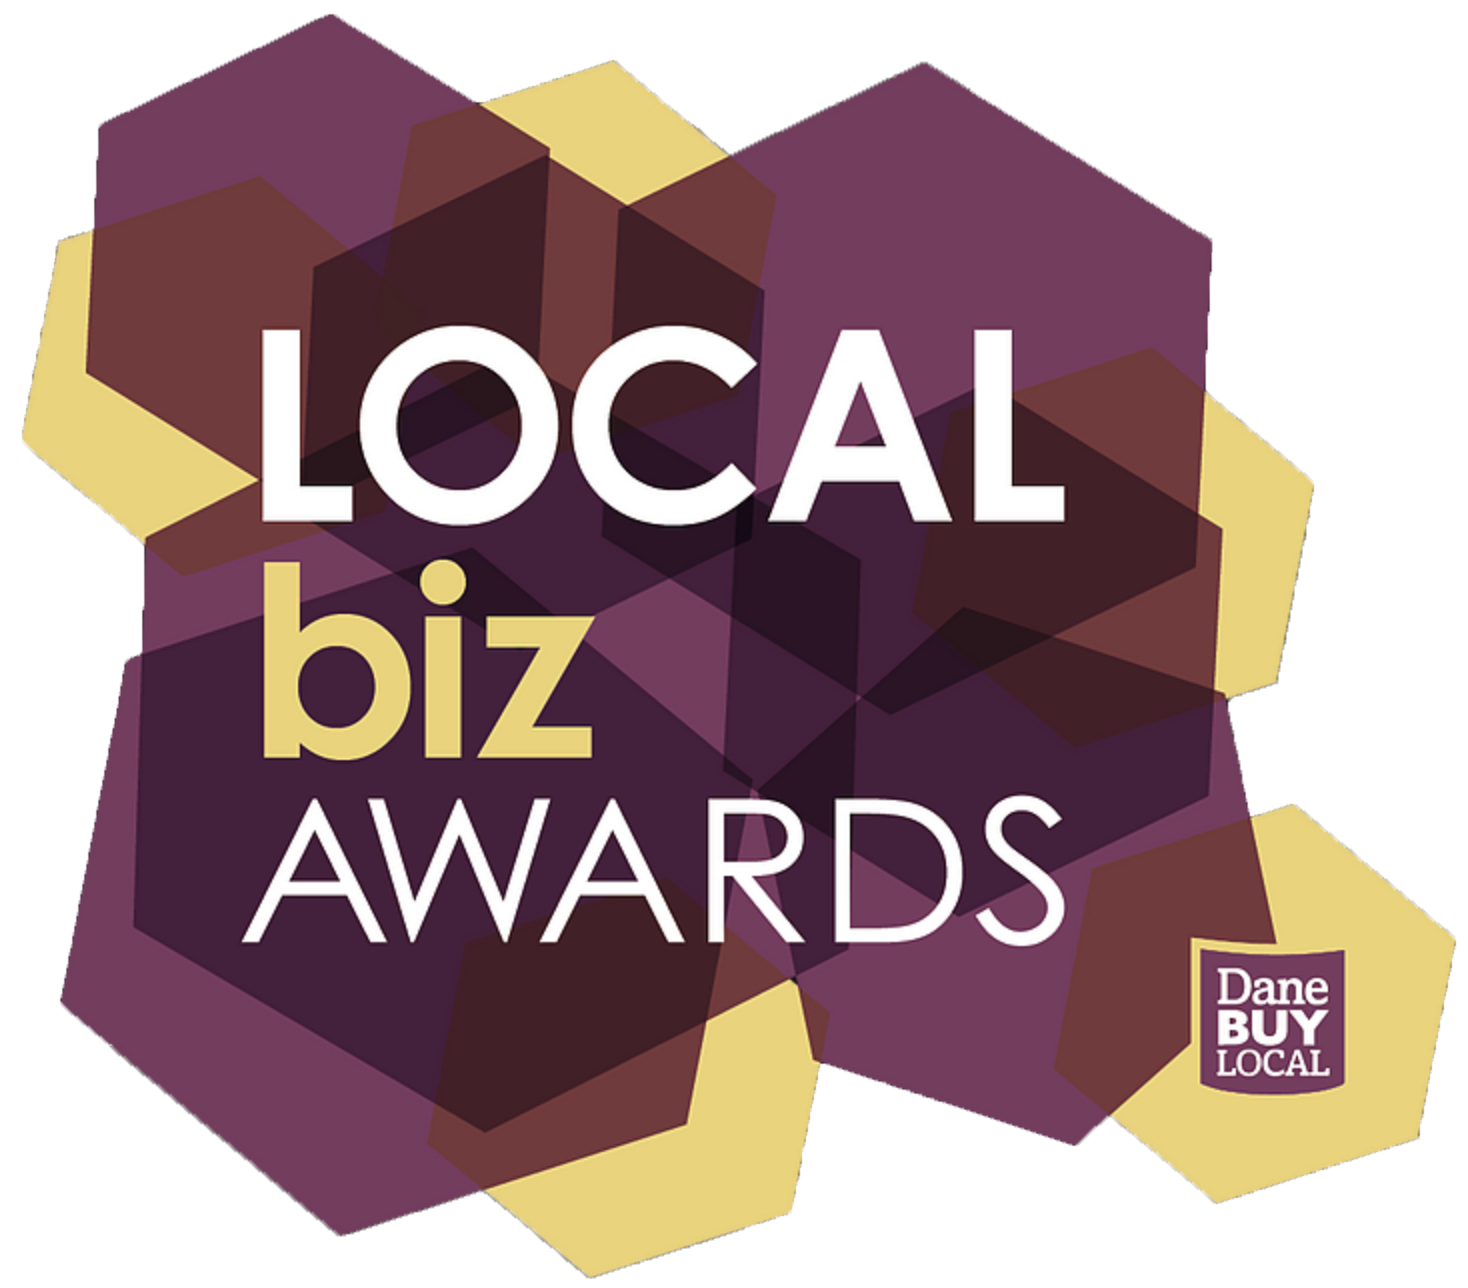 local biz awards dane buy local